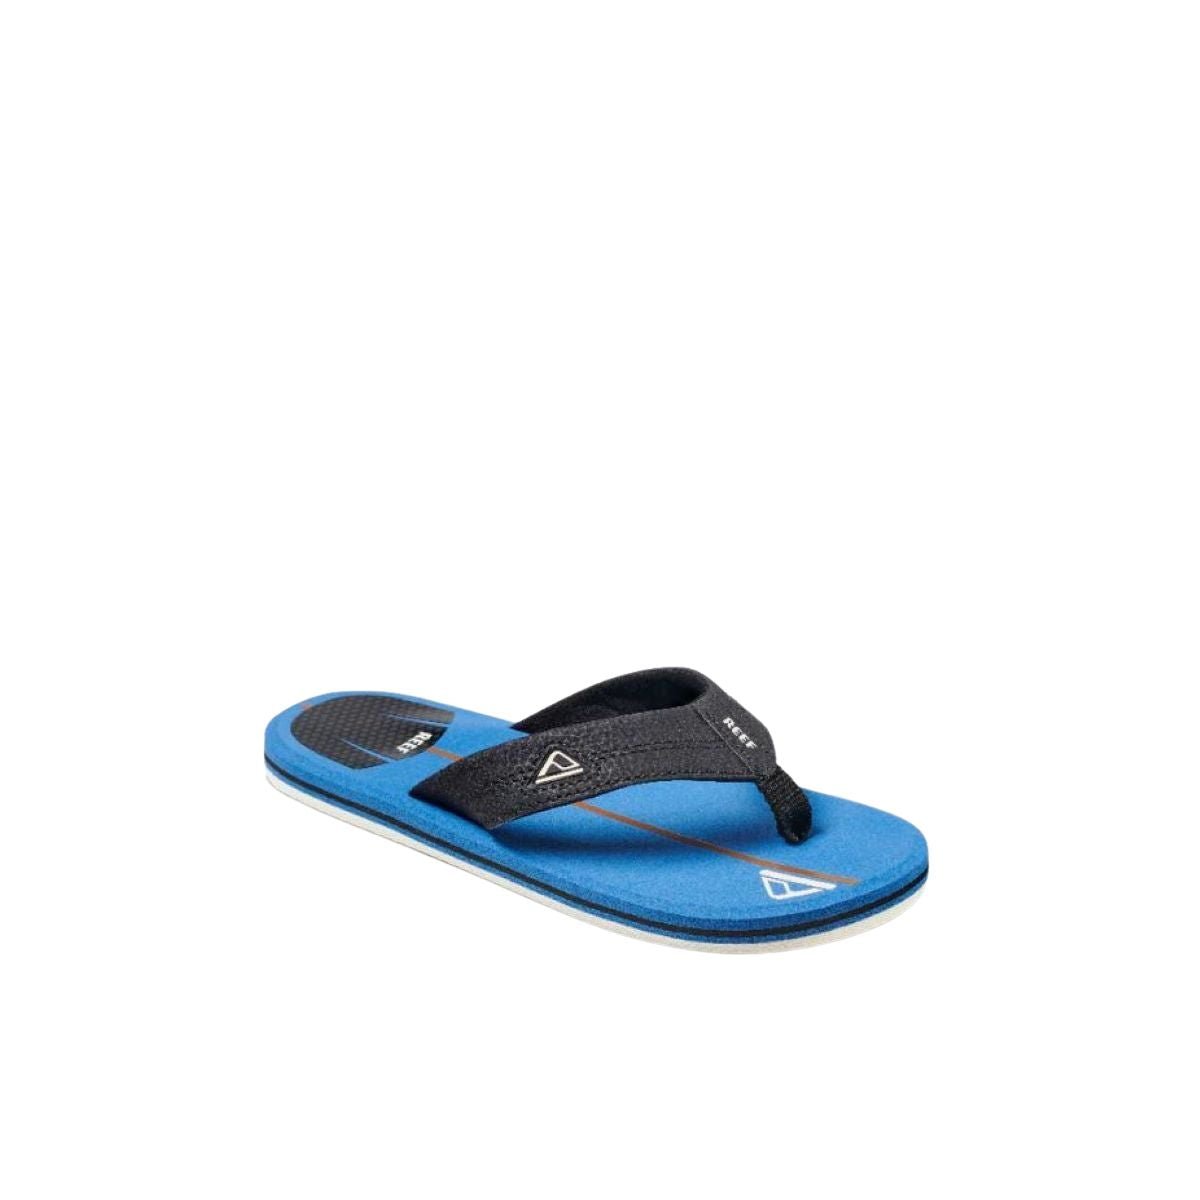 Reef Kids Shaper Sandal in Blue - BoardCo